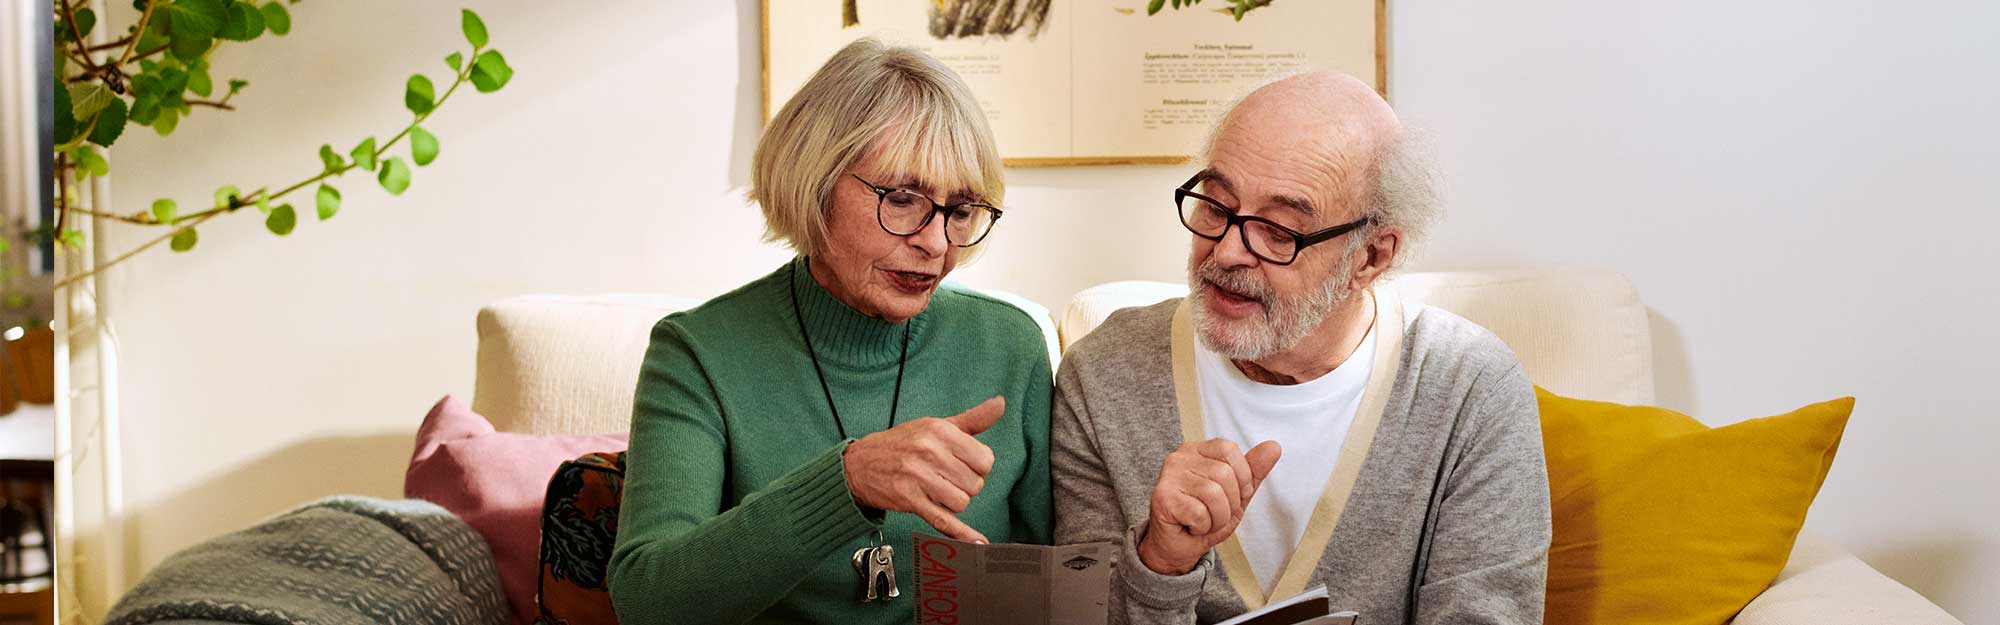 En äldre man och kvinna sitter i en soffa och tittar på en broschyr 